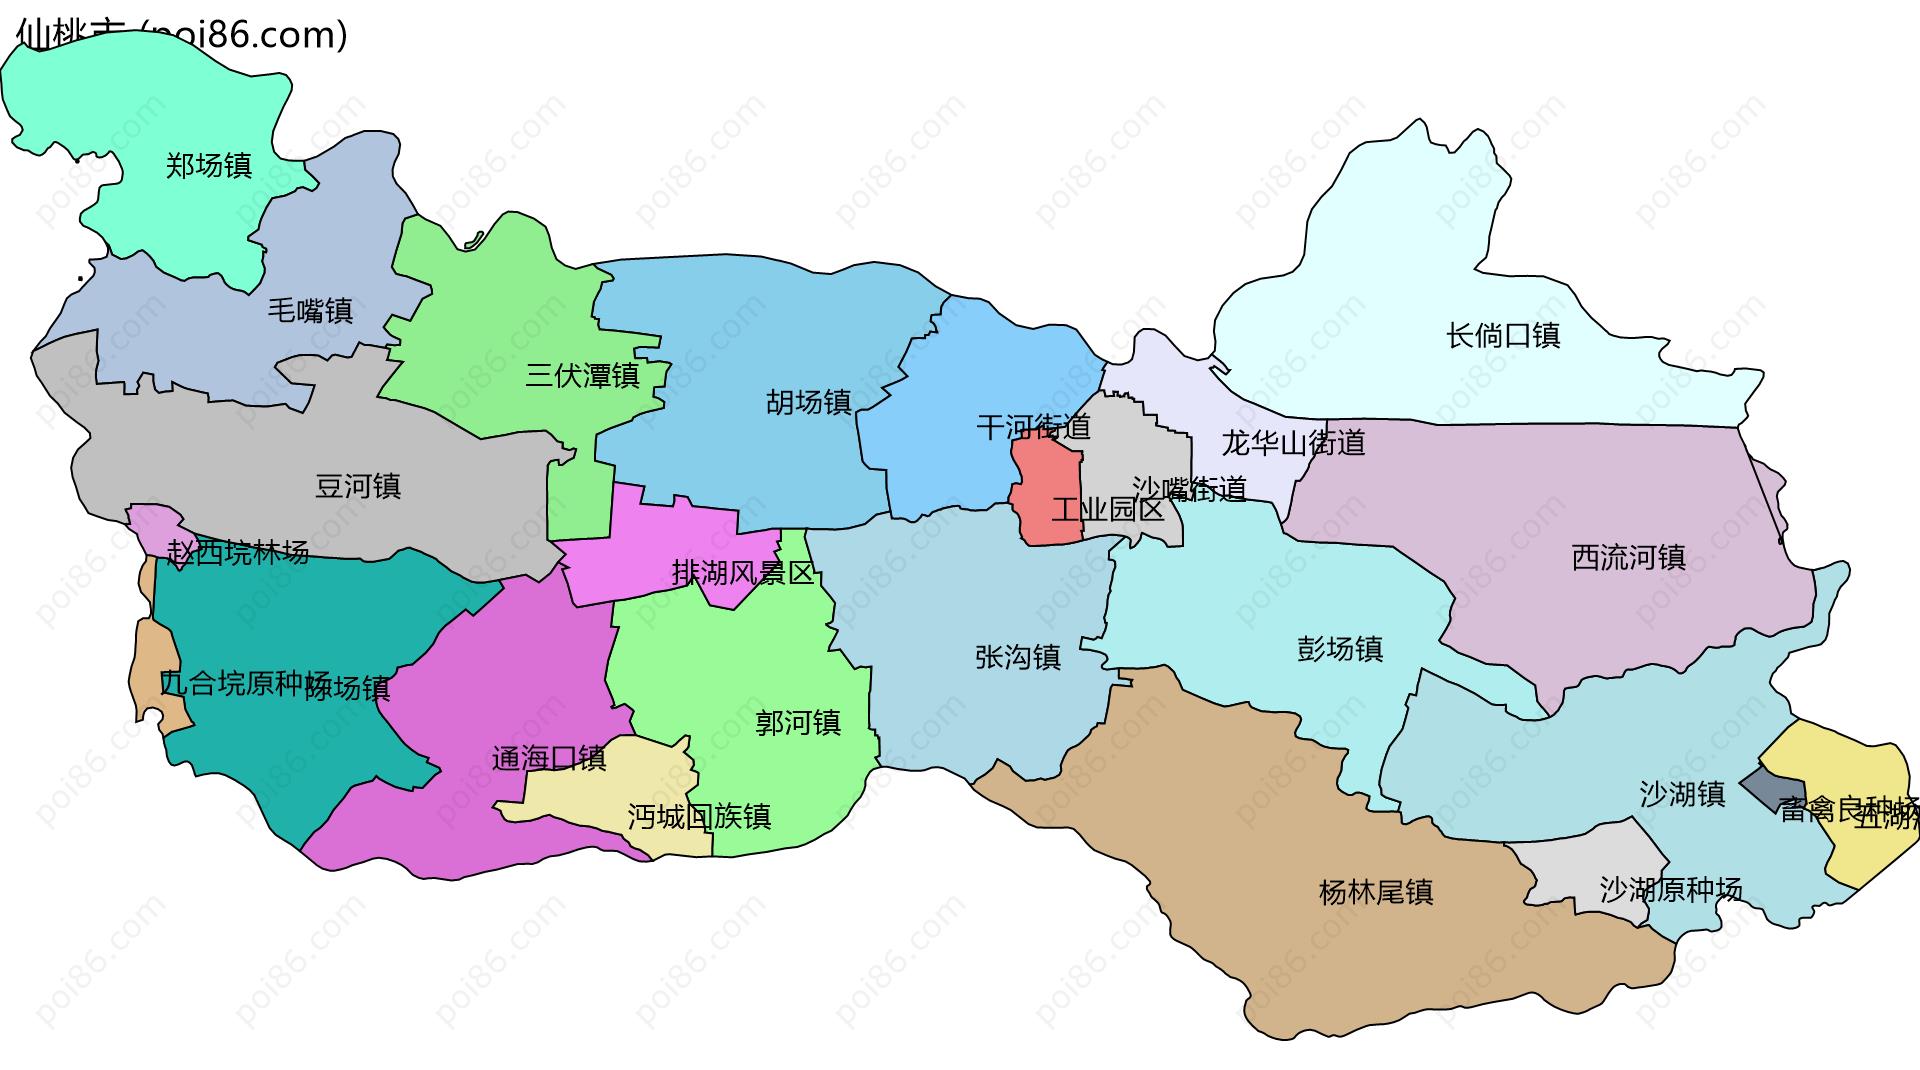 仙桃市边界地图